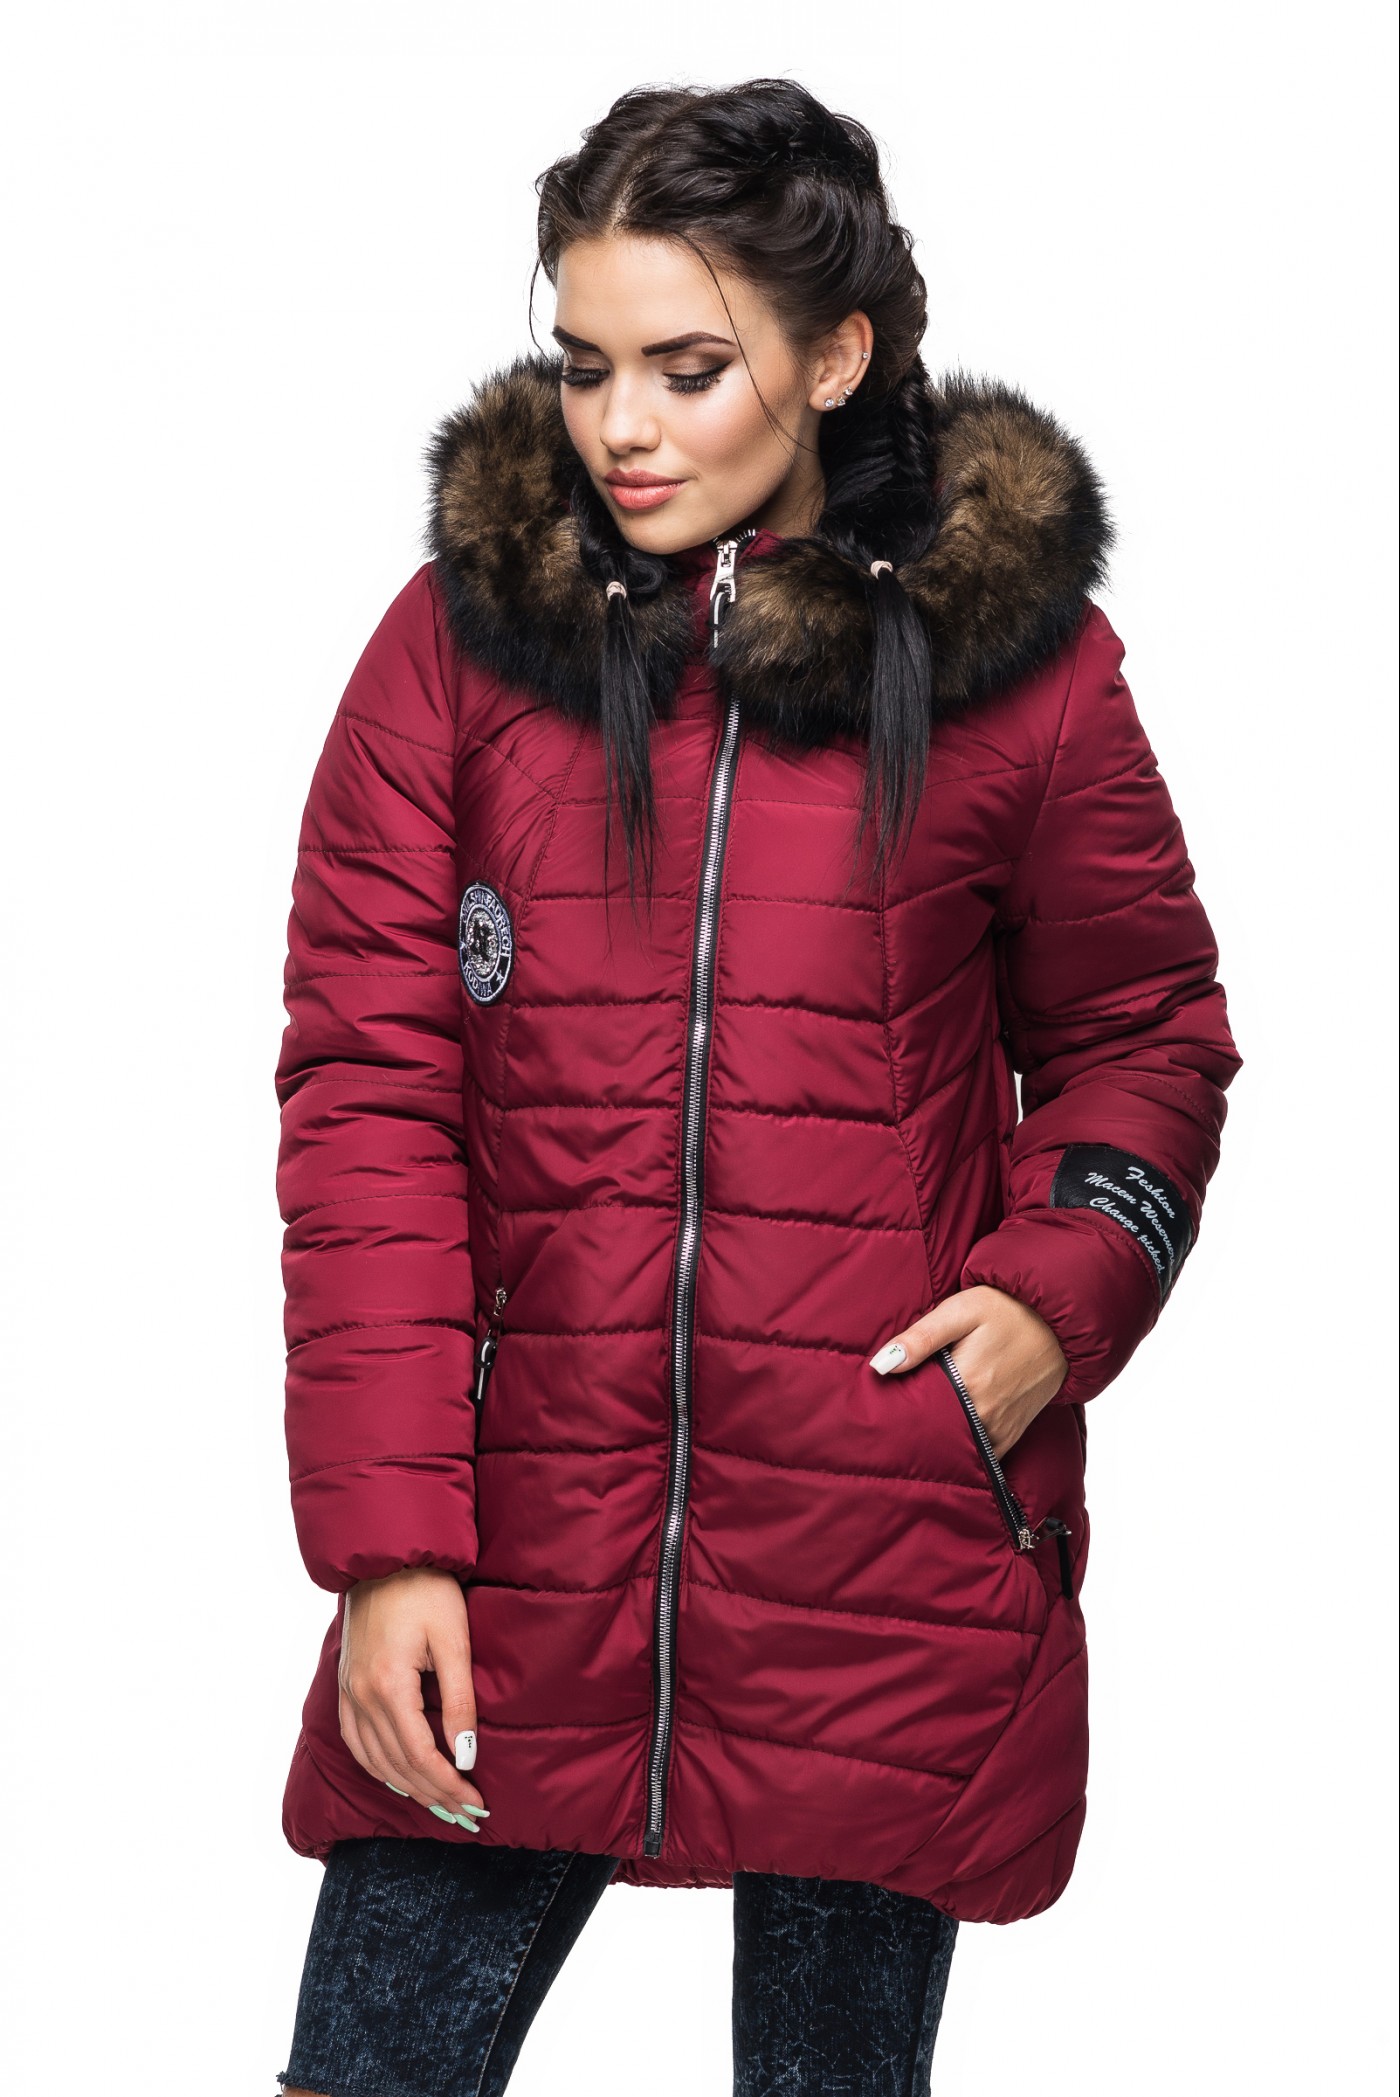 Зимняя куртка пуховик. Куртка Kariant, цвет бордовый. Валдберис зимние женские куртки. Куртка зимняя эженская. Зимняя курсточка женская.